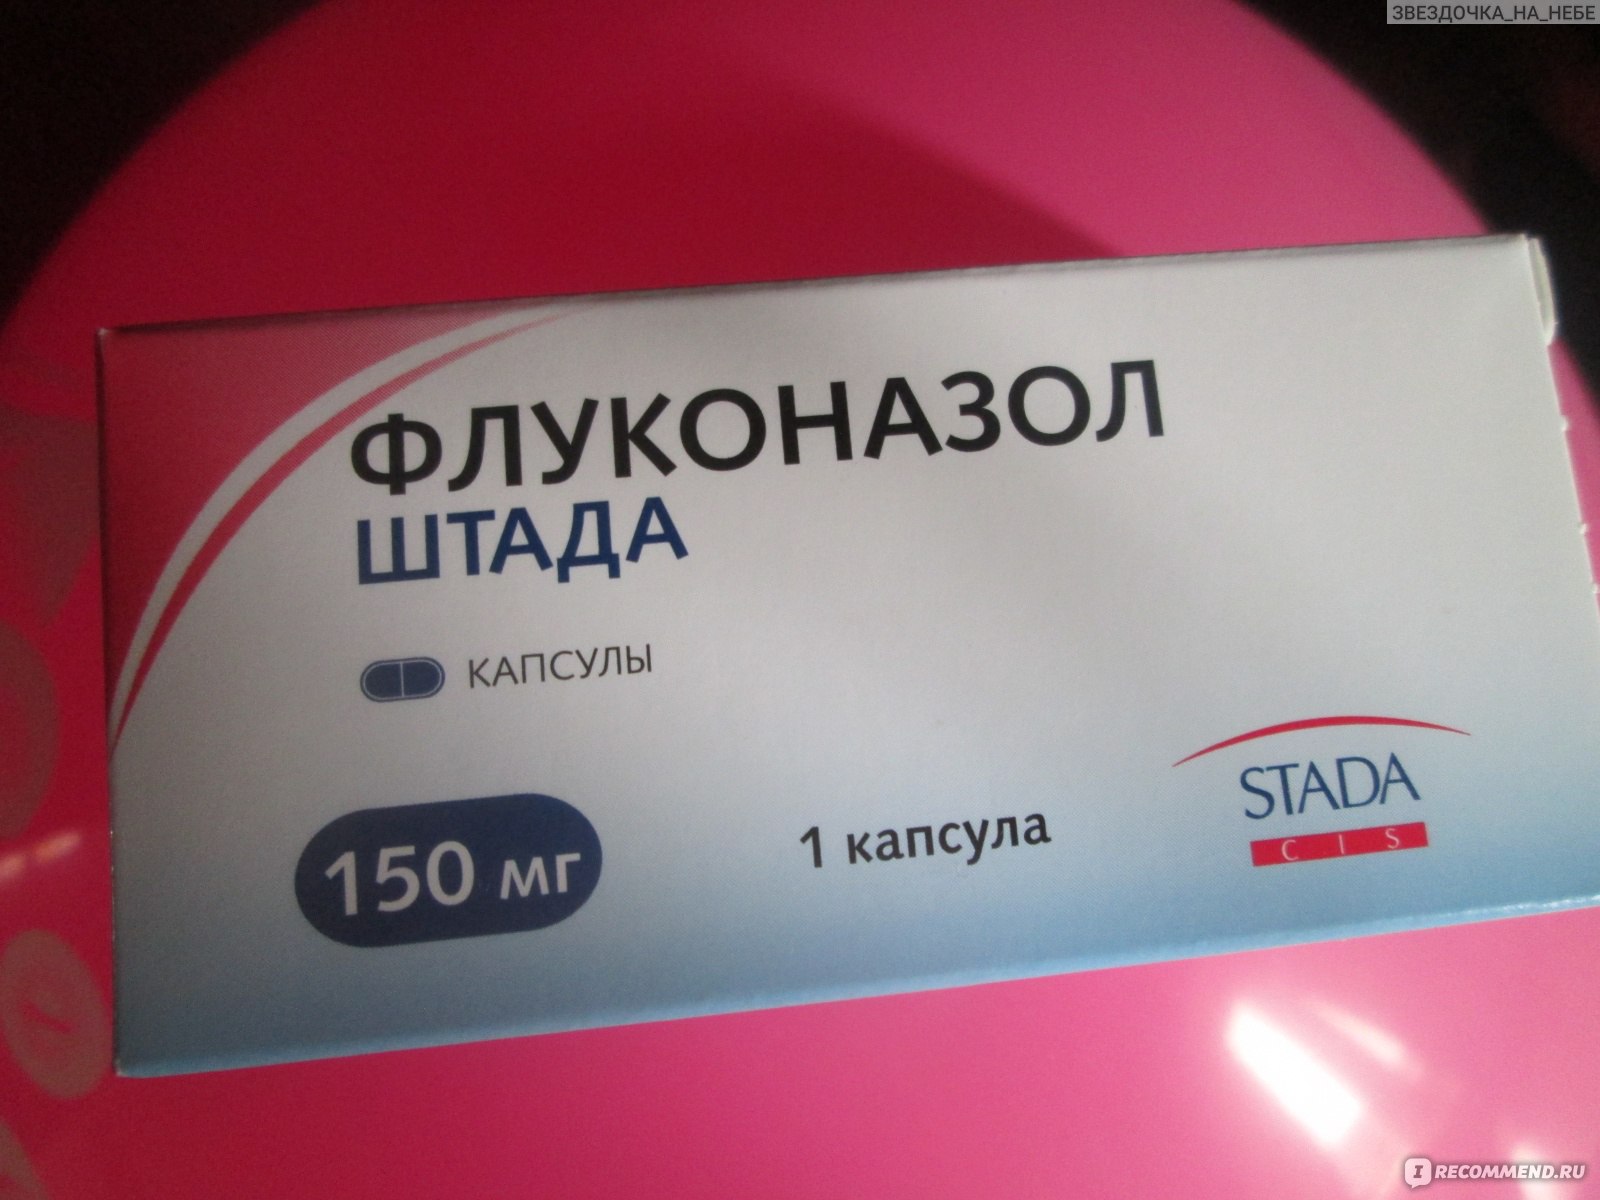 Противогрибковое средство Stada Флуконазол ШТАДА - «Я флуконазол от .